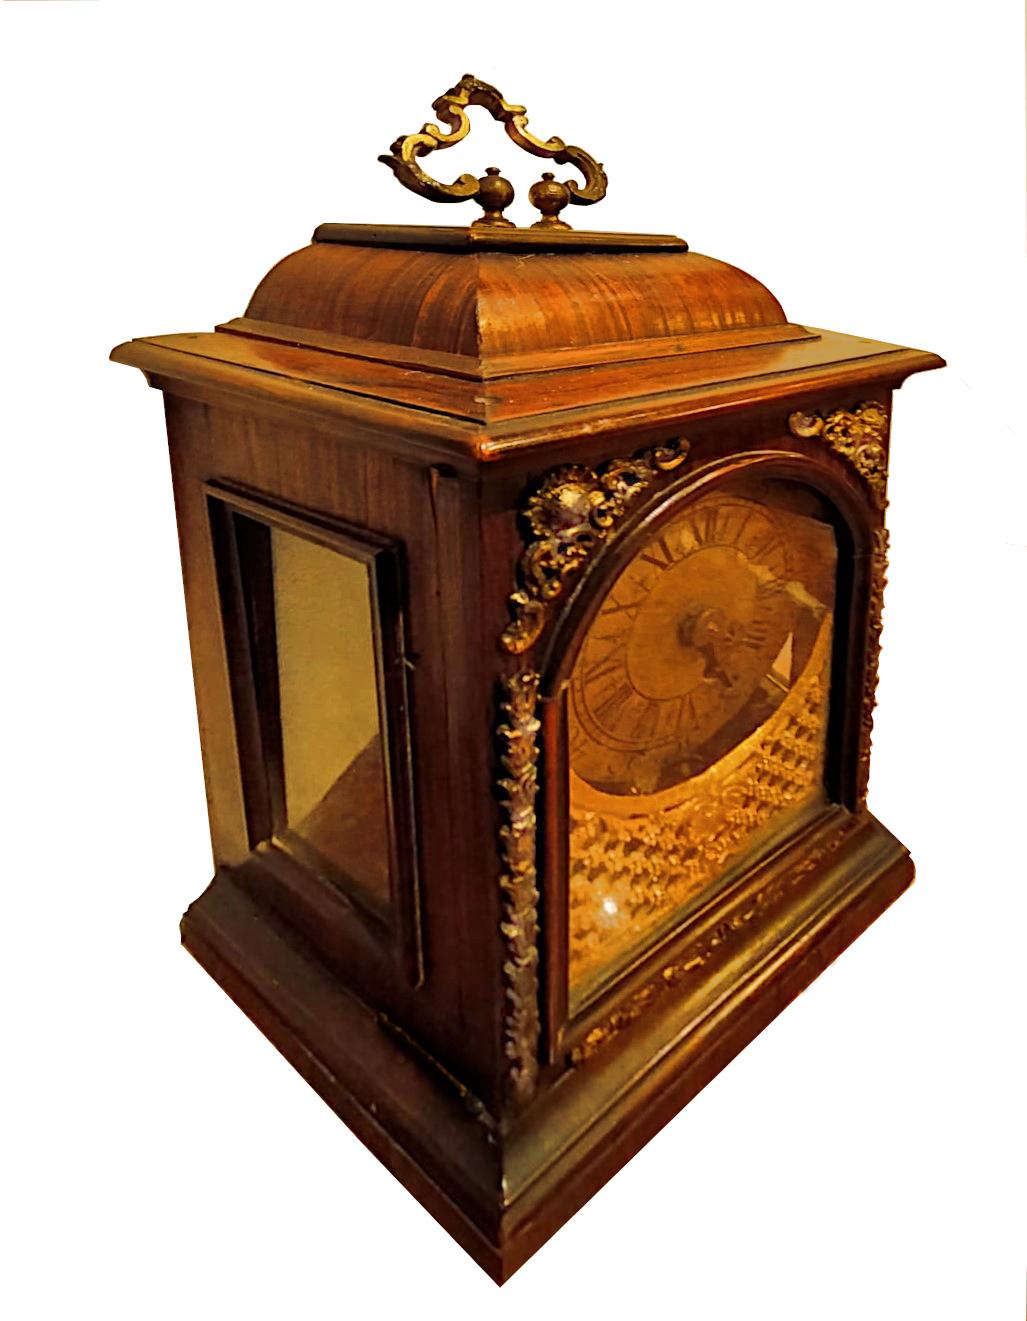 Horloge italienne du début du 18e siècle (Rome).

Belle horloge de table du début des années 1700, faite de bois de rose lambrissé et de bronzes dorés.
Dimensions : largeur cm 27, profondeur cm 13,5 - hauteur cm 39 
L'armoire et le mécanisme doivent